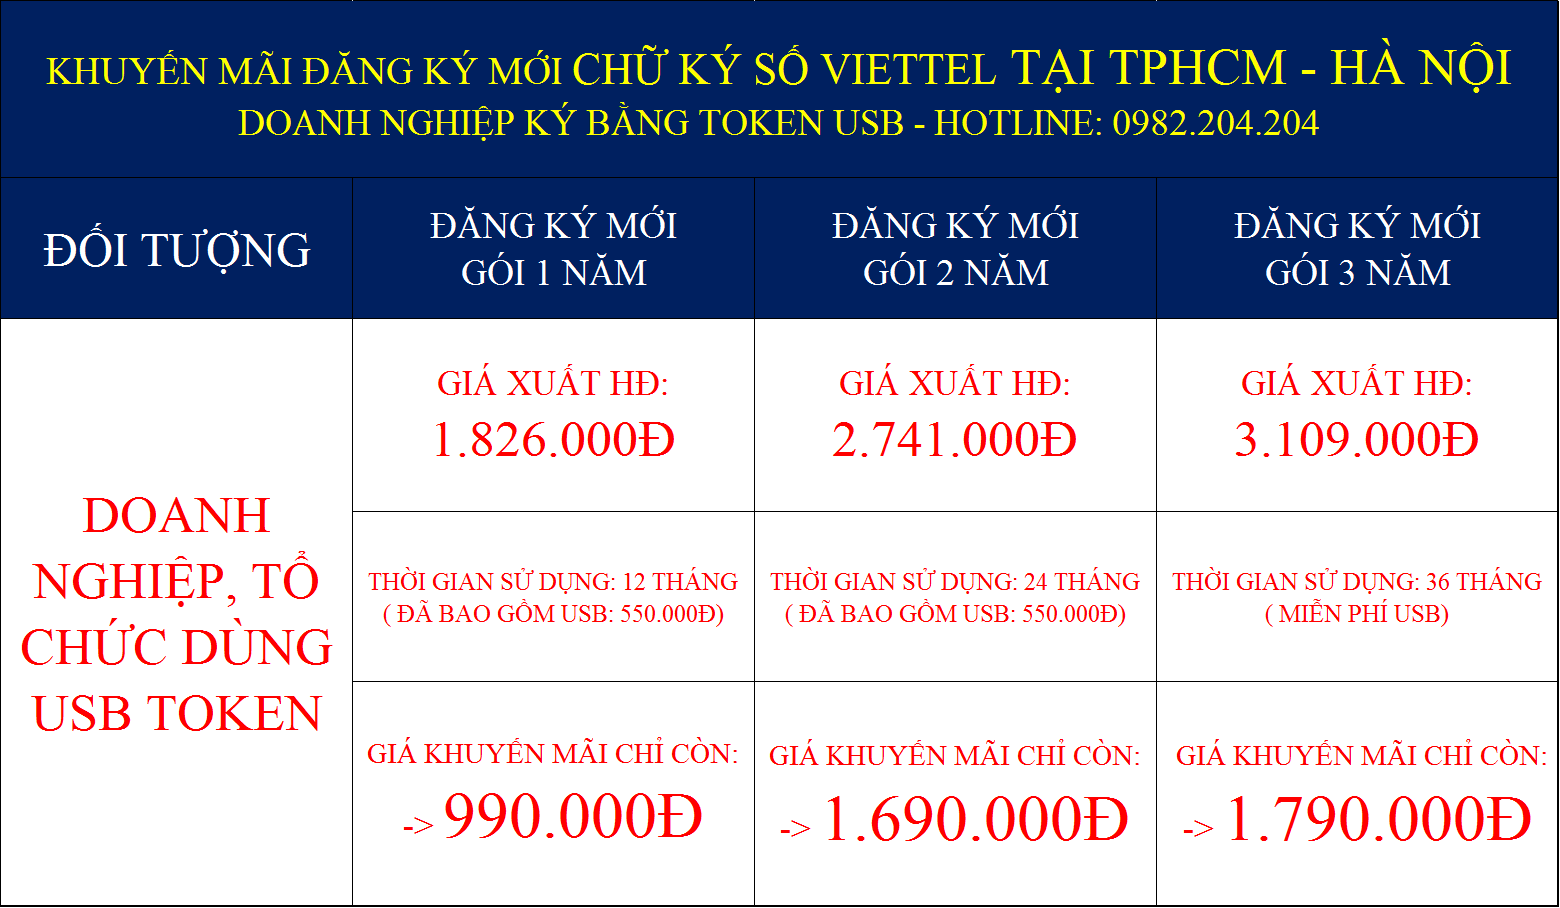 Khuyến mãi chữ ký số Viettel tại Hà Nội và TPHCM giá rẻ nhất